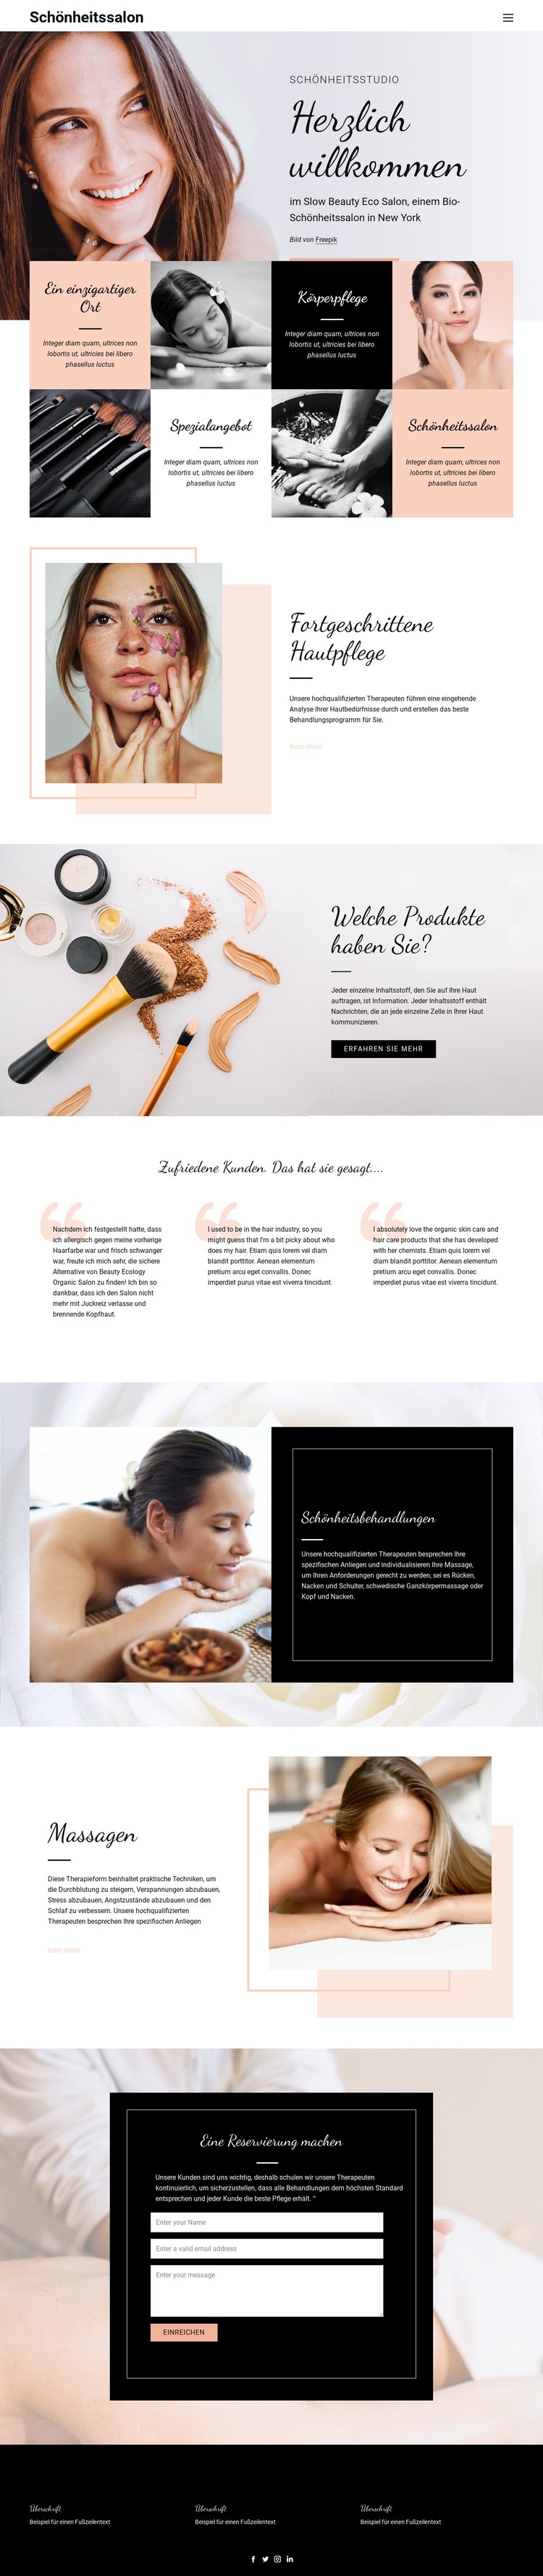 Friseur-, Nagel- und Schönheitssalon Website-Modell